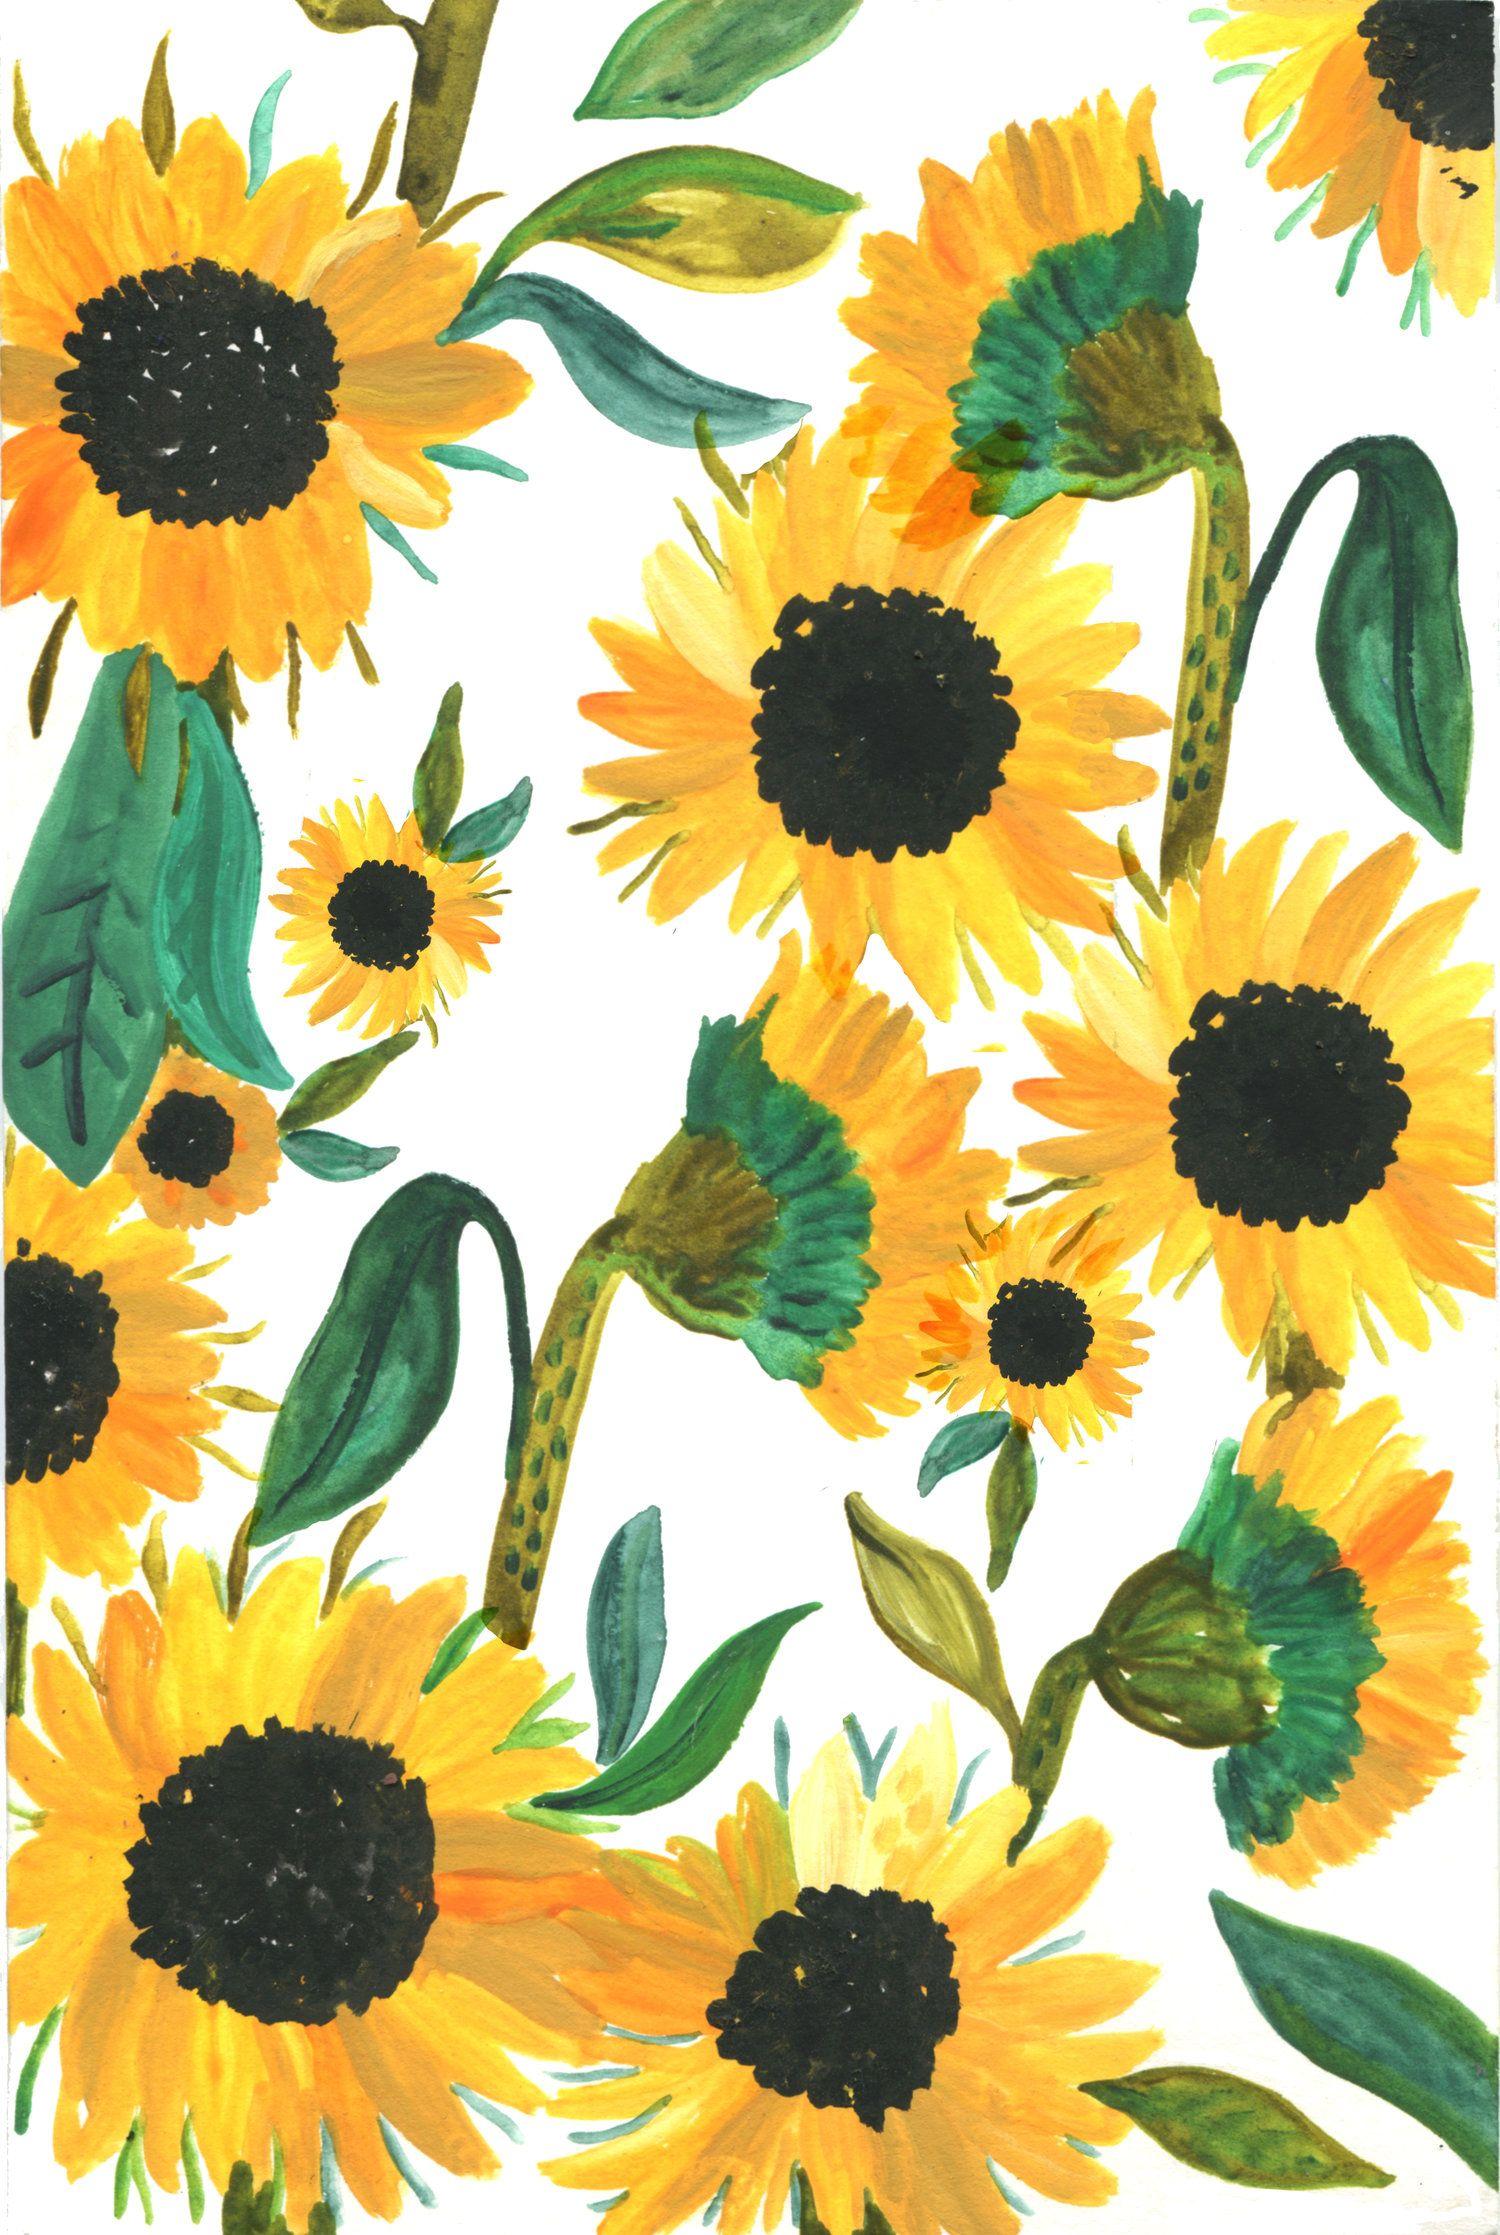 Phone Wallpaper. Sunflower wallpaper